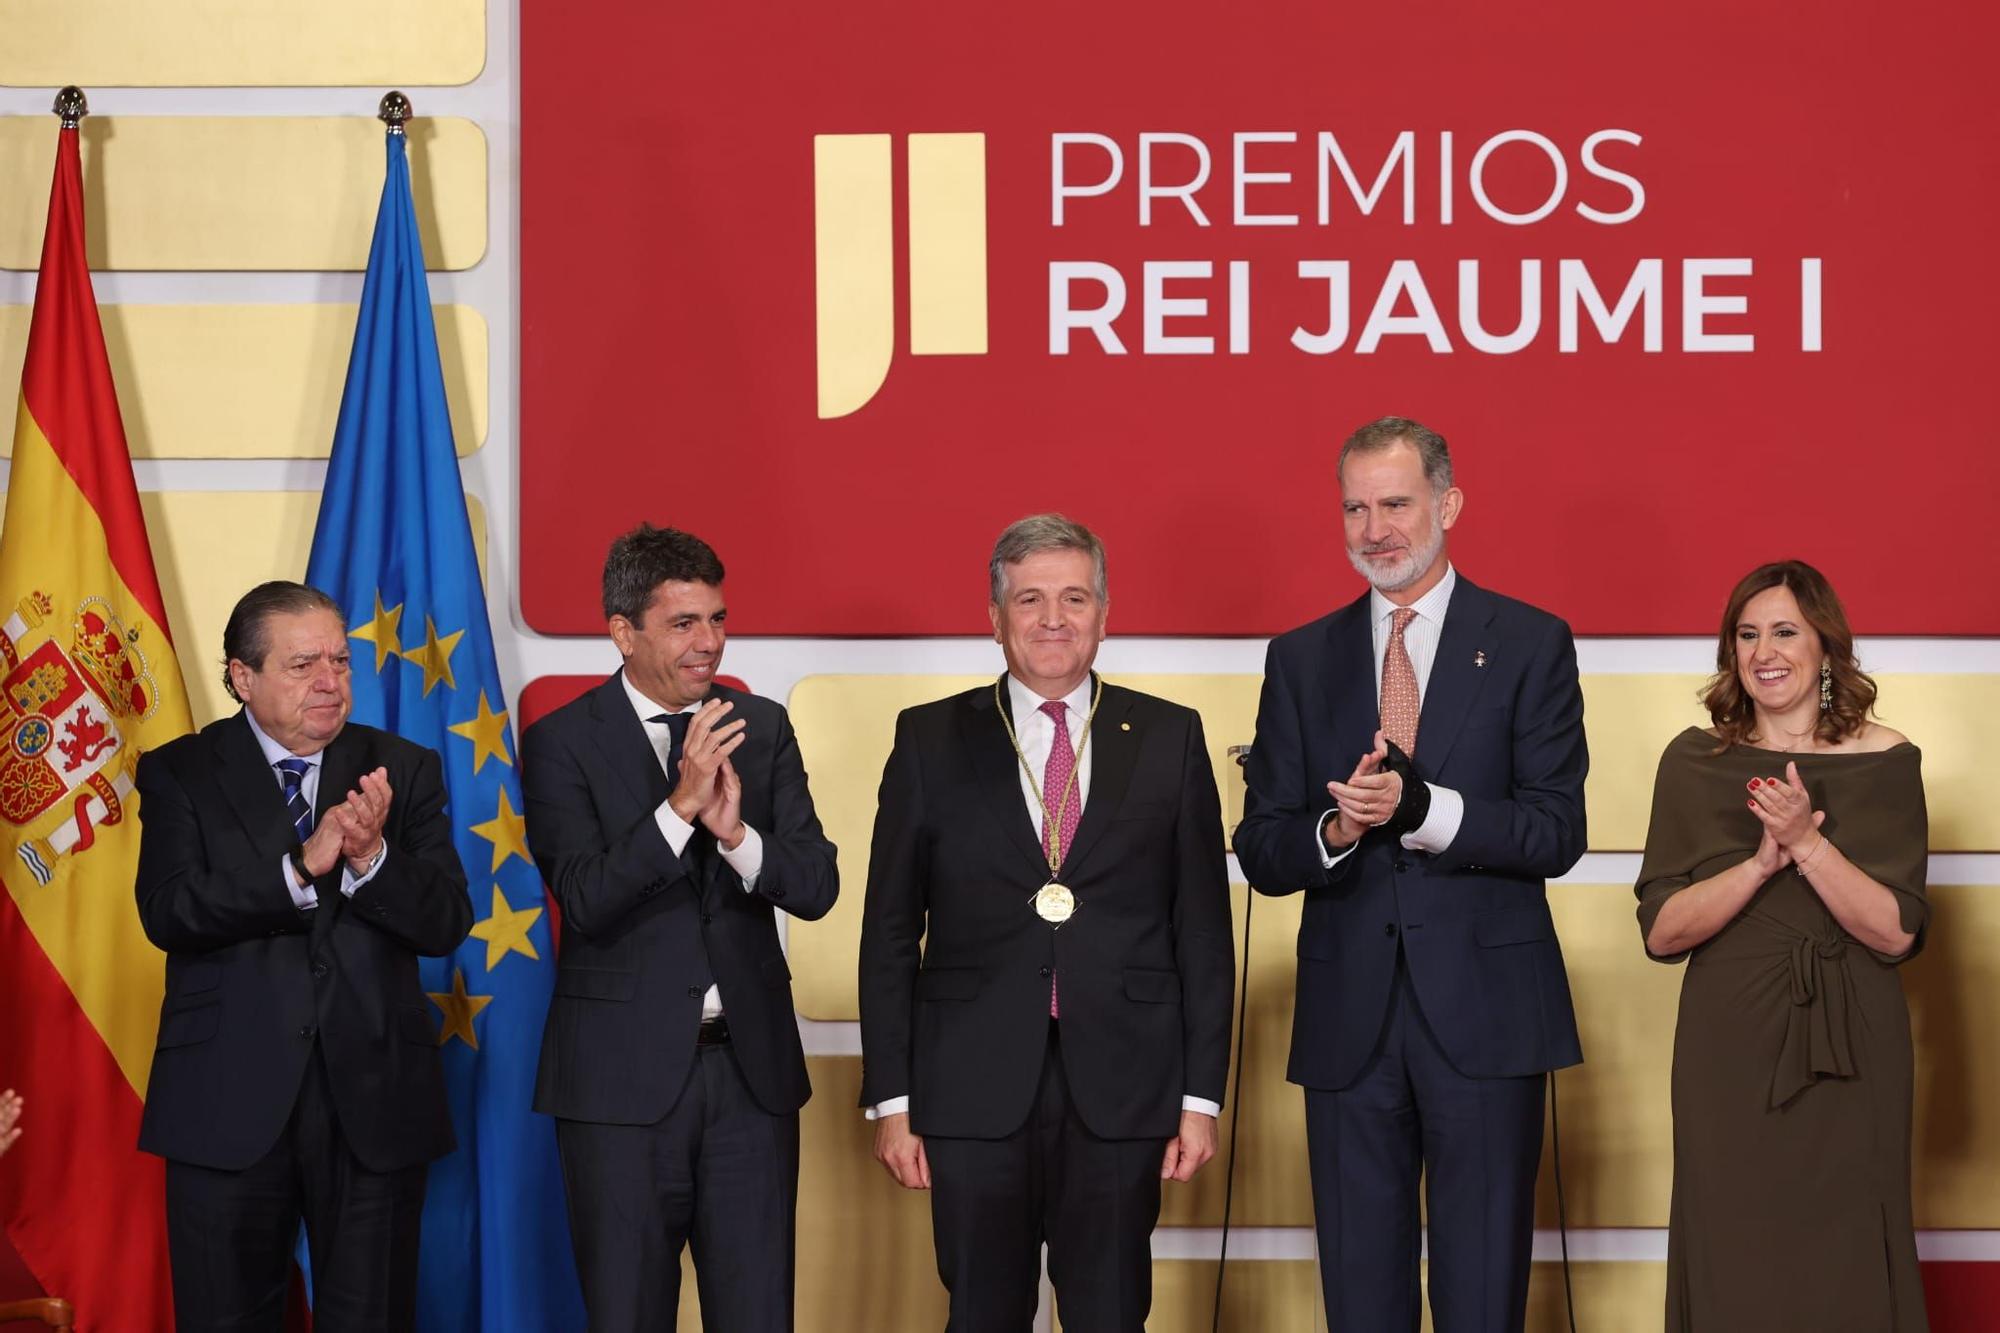 Las autoridades en el acto de entrega de los premios Jaume I